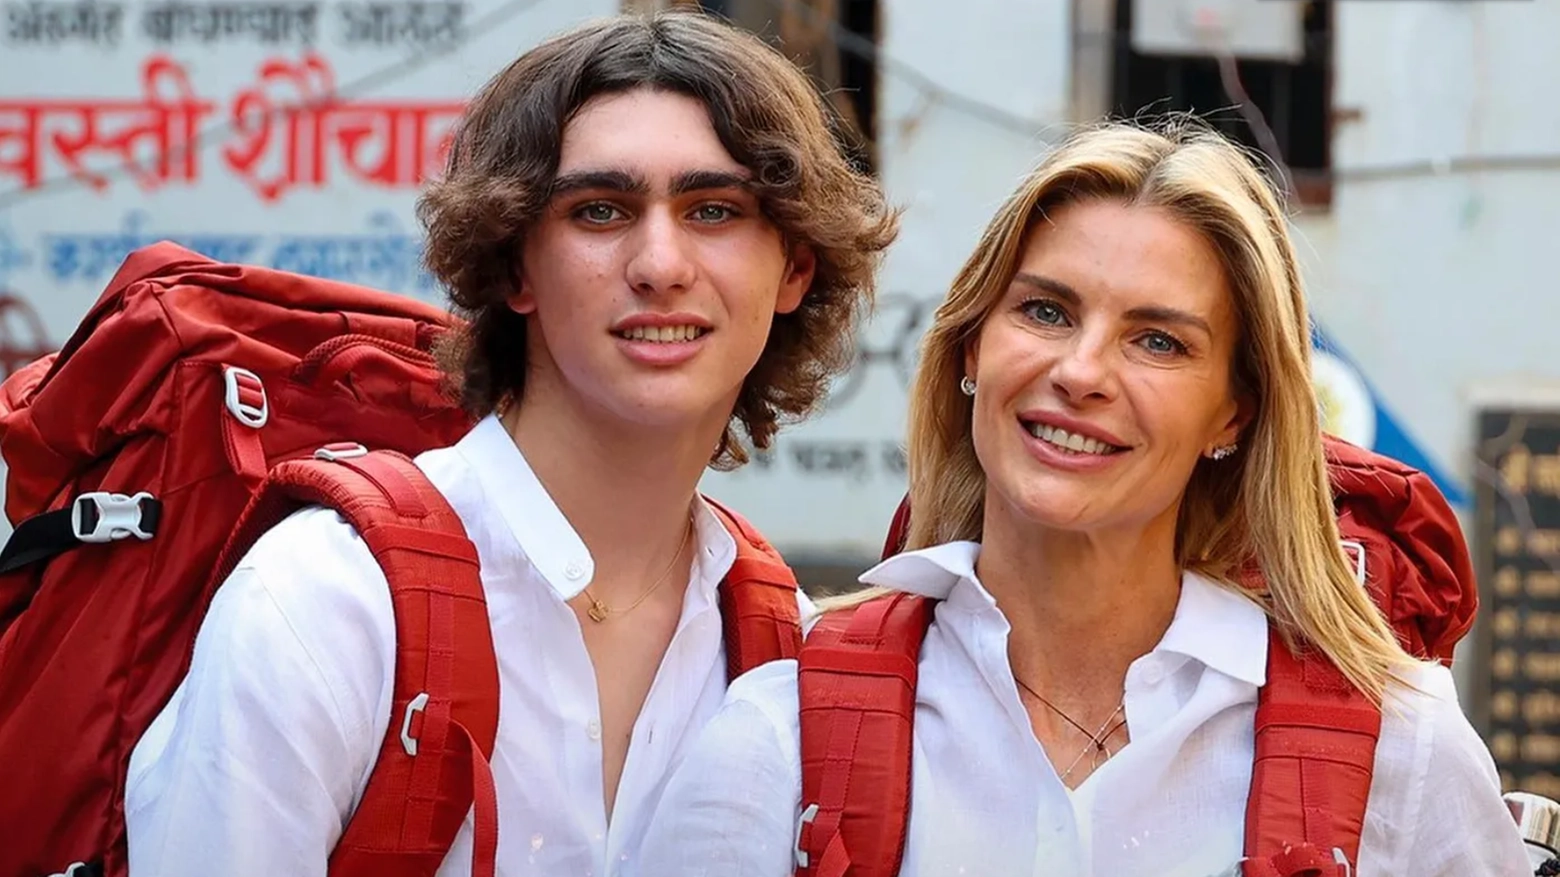 Achille Costacurta e Martina Colombari a Pechino Express: cos’è successo a mamma e figlio